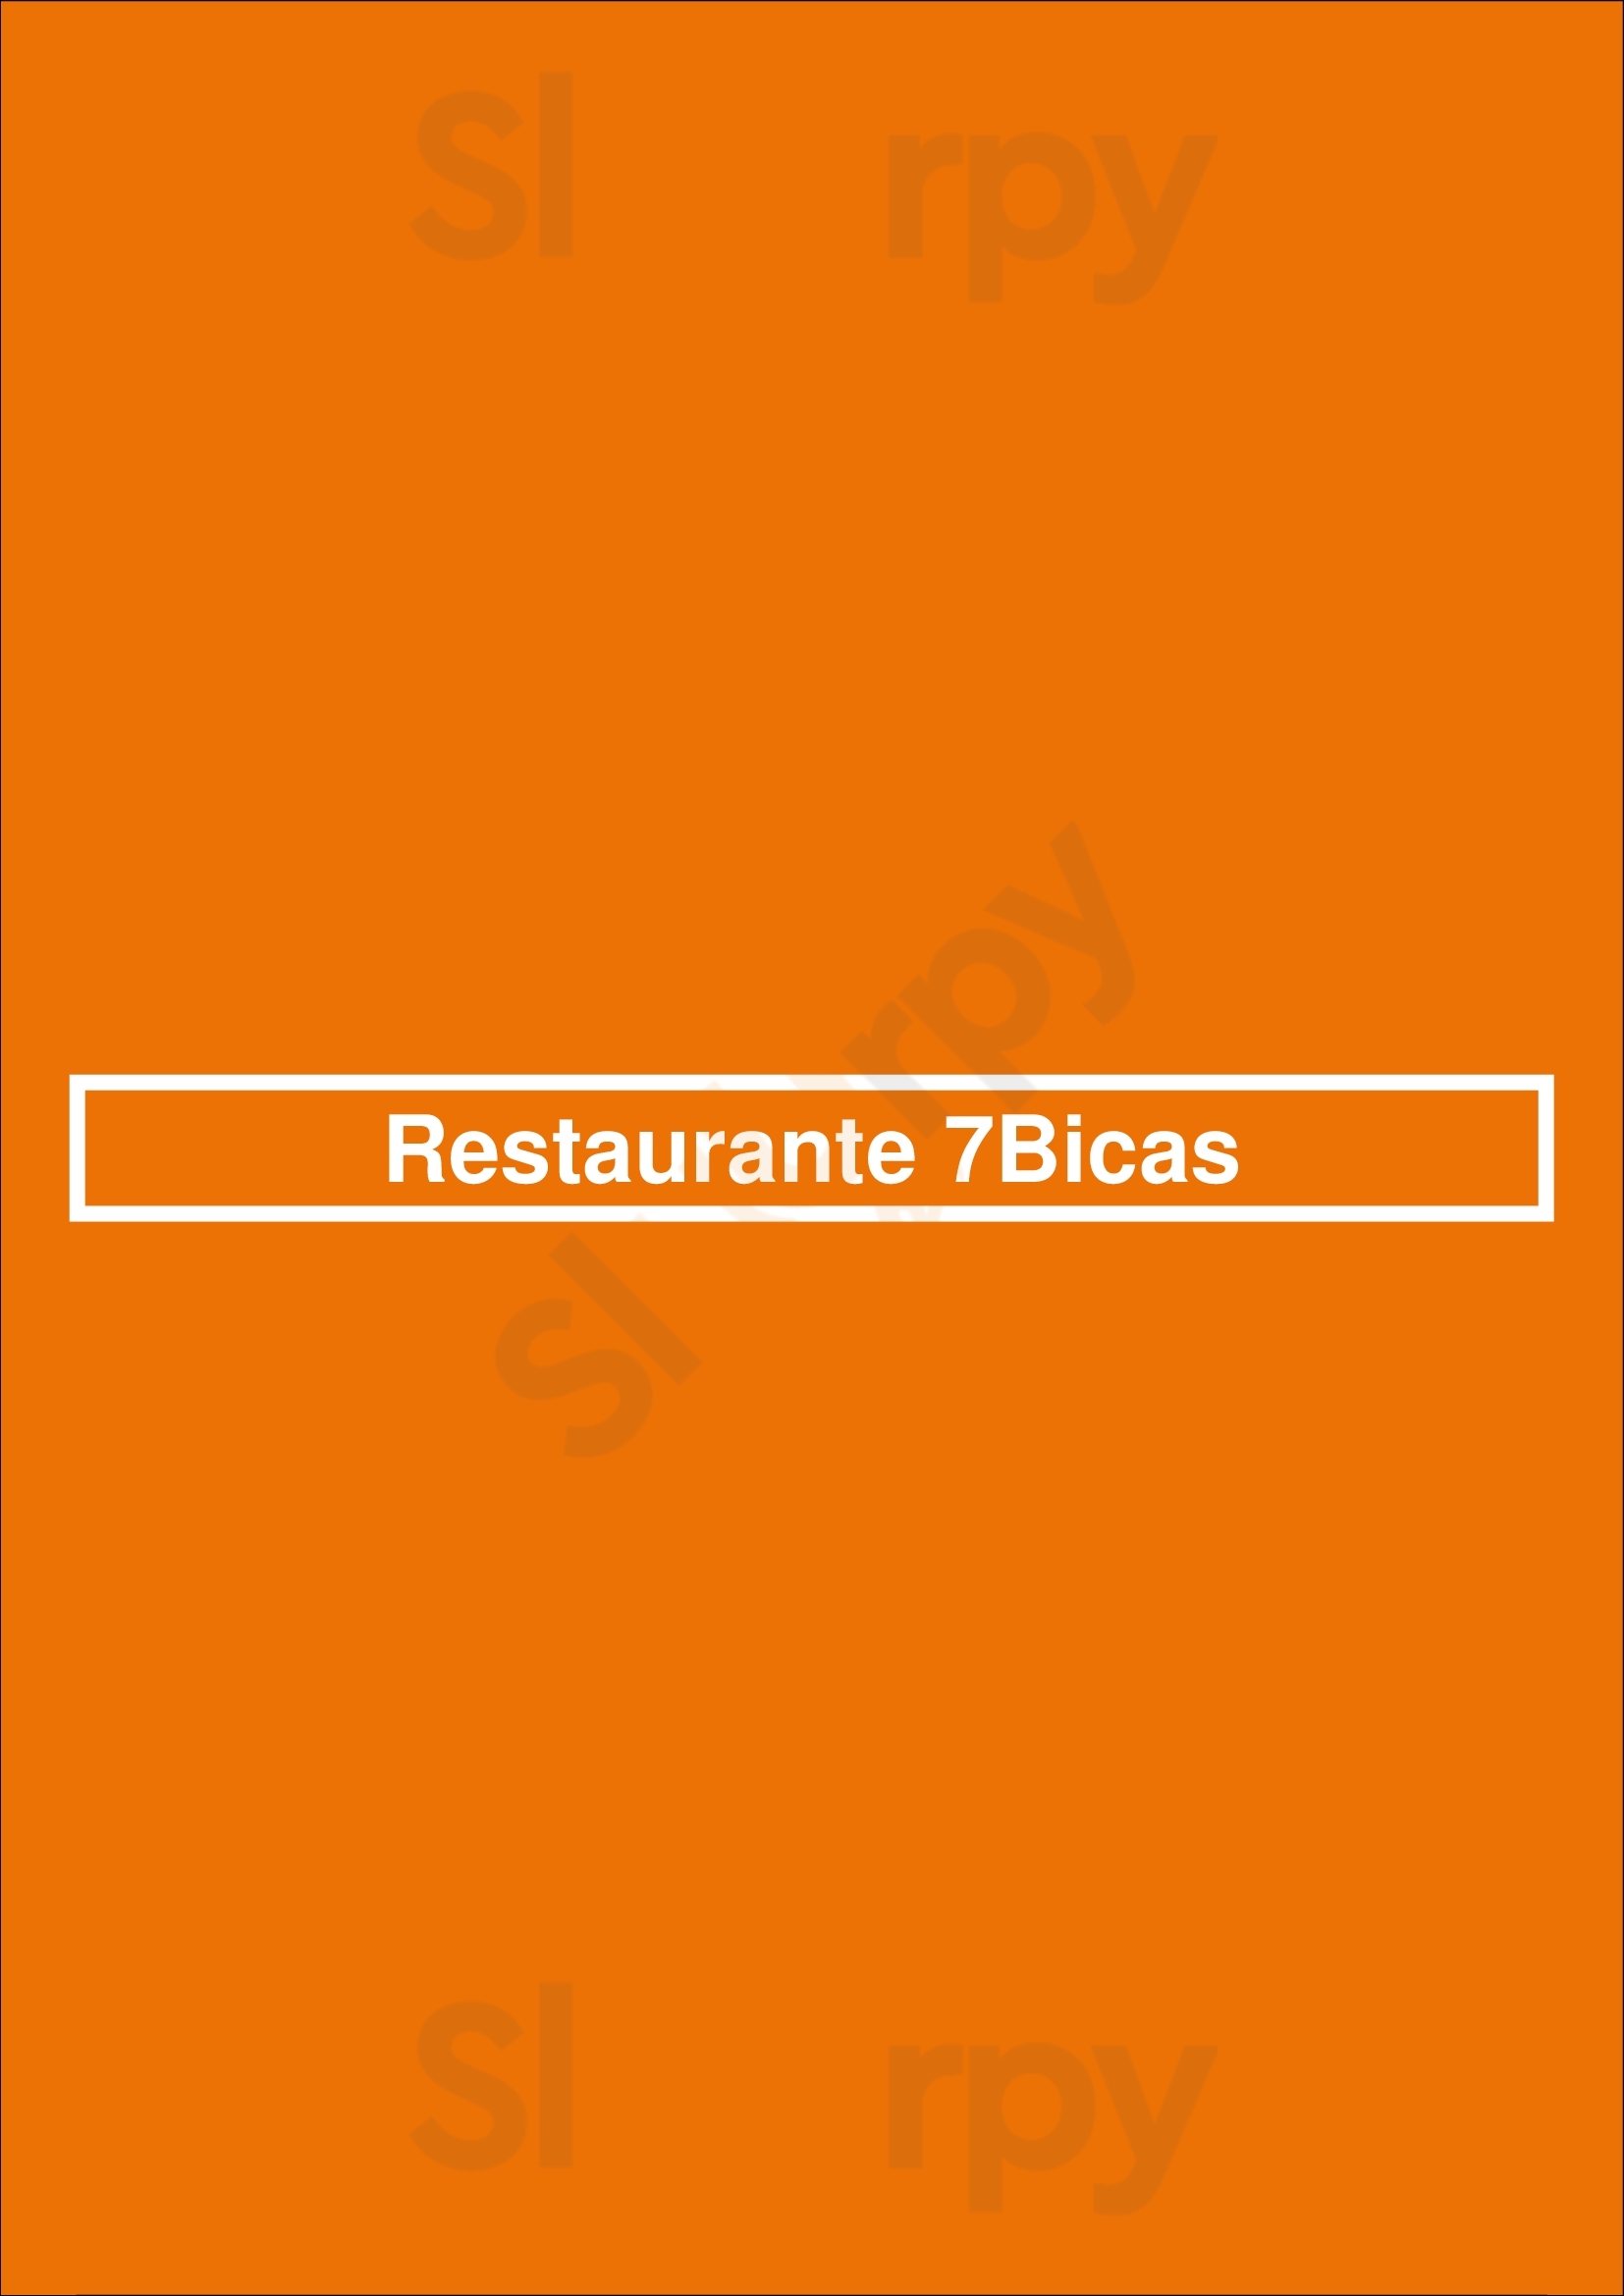 Restaurante 7bicas Lisboa Menu - 1